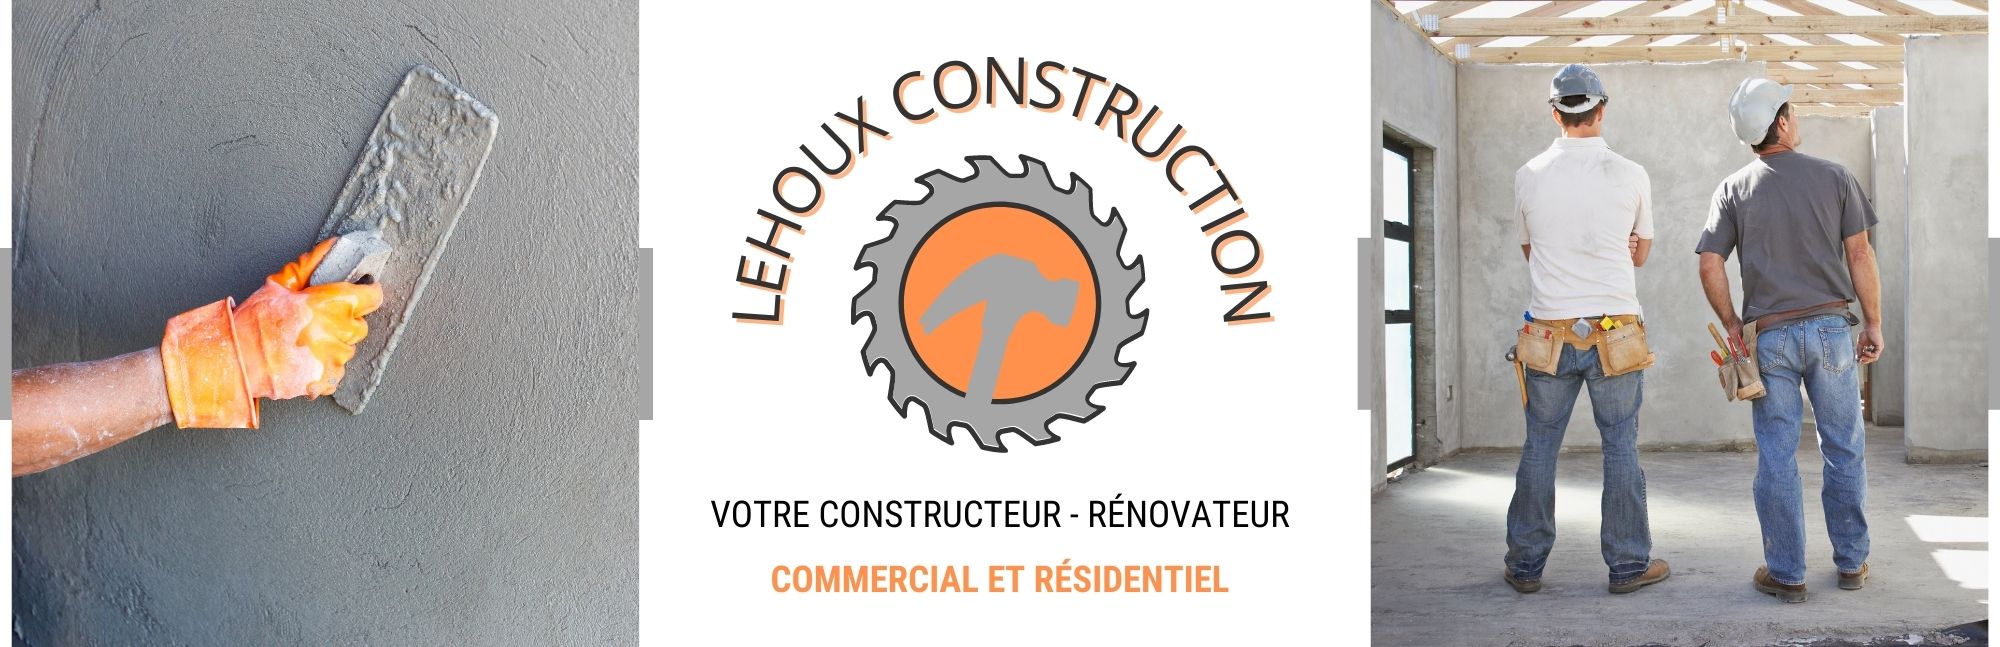 LEHOUX CONSTRUCTION 2021